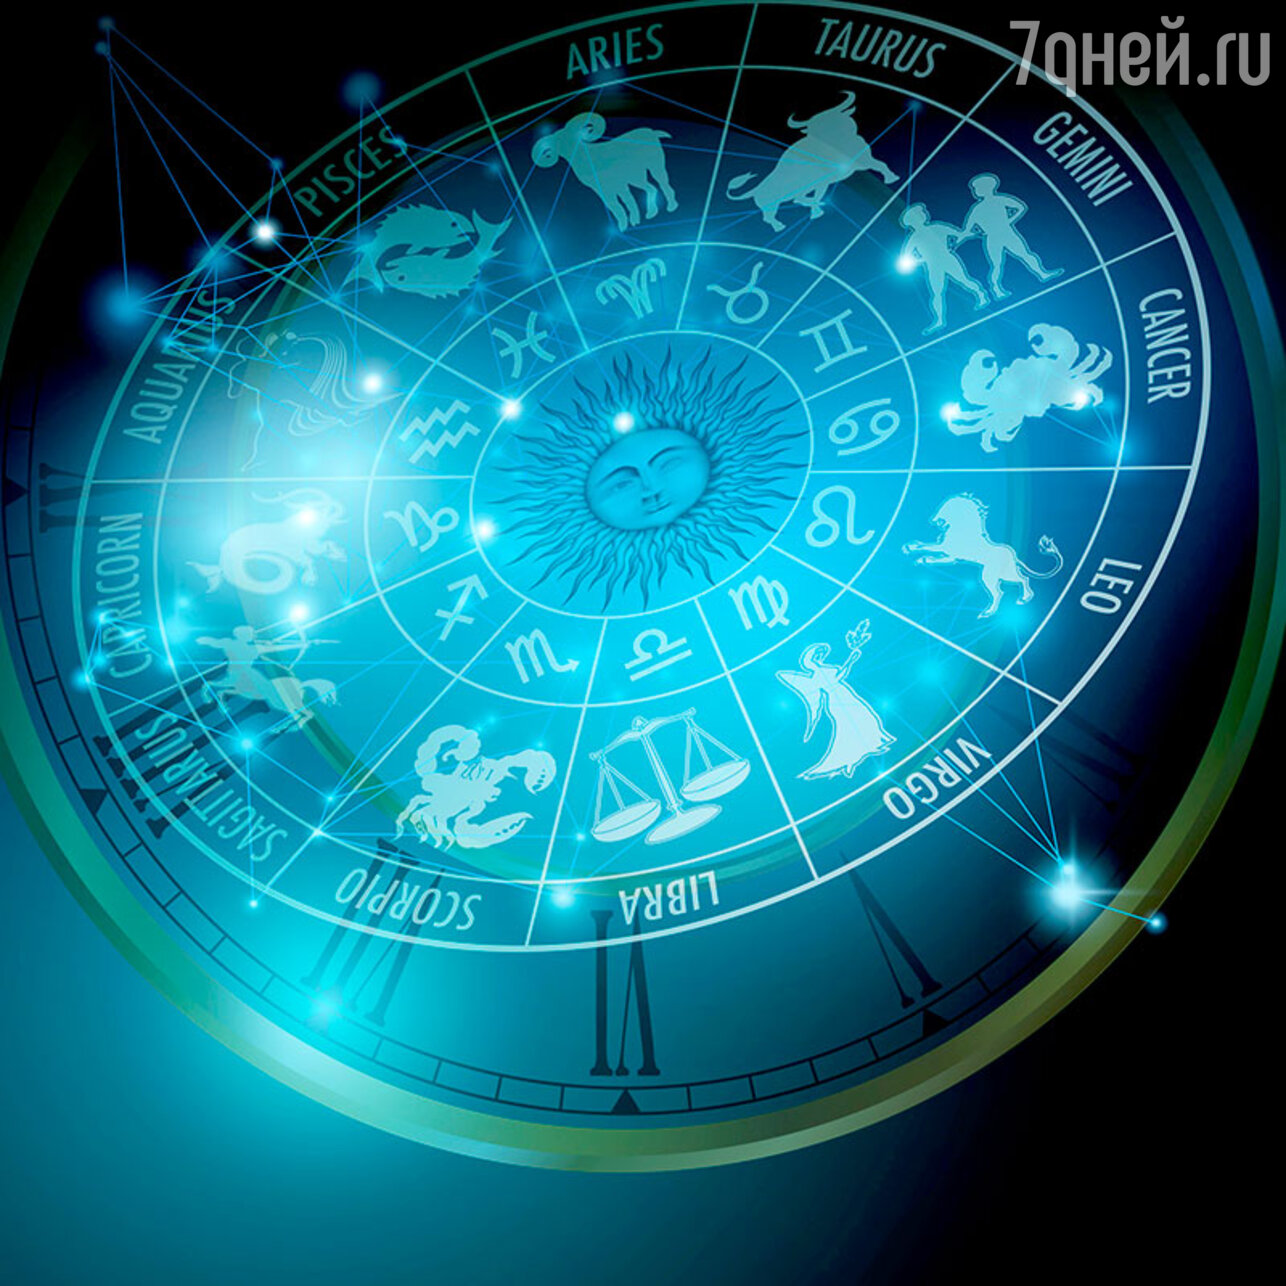 Доброе утро астрологический прогноз. Зодиакальный круг. Красивый фон астрология. Астрология иллюстрации. Астрологический гороскоп.